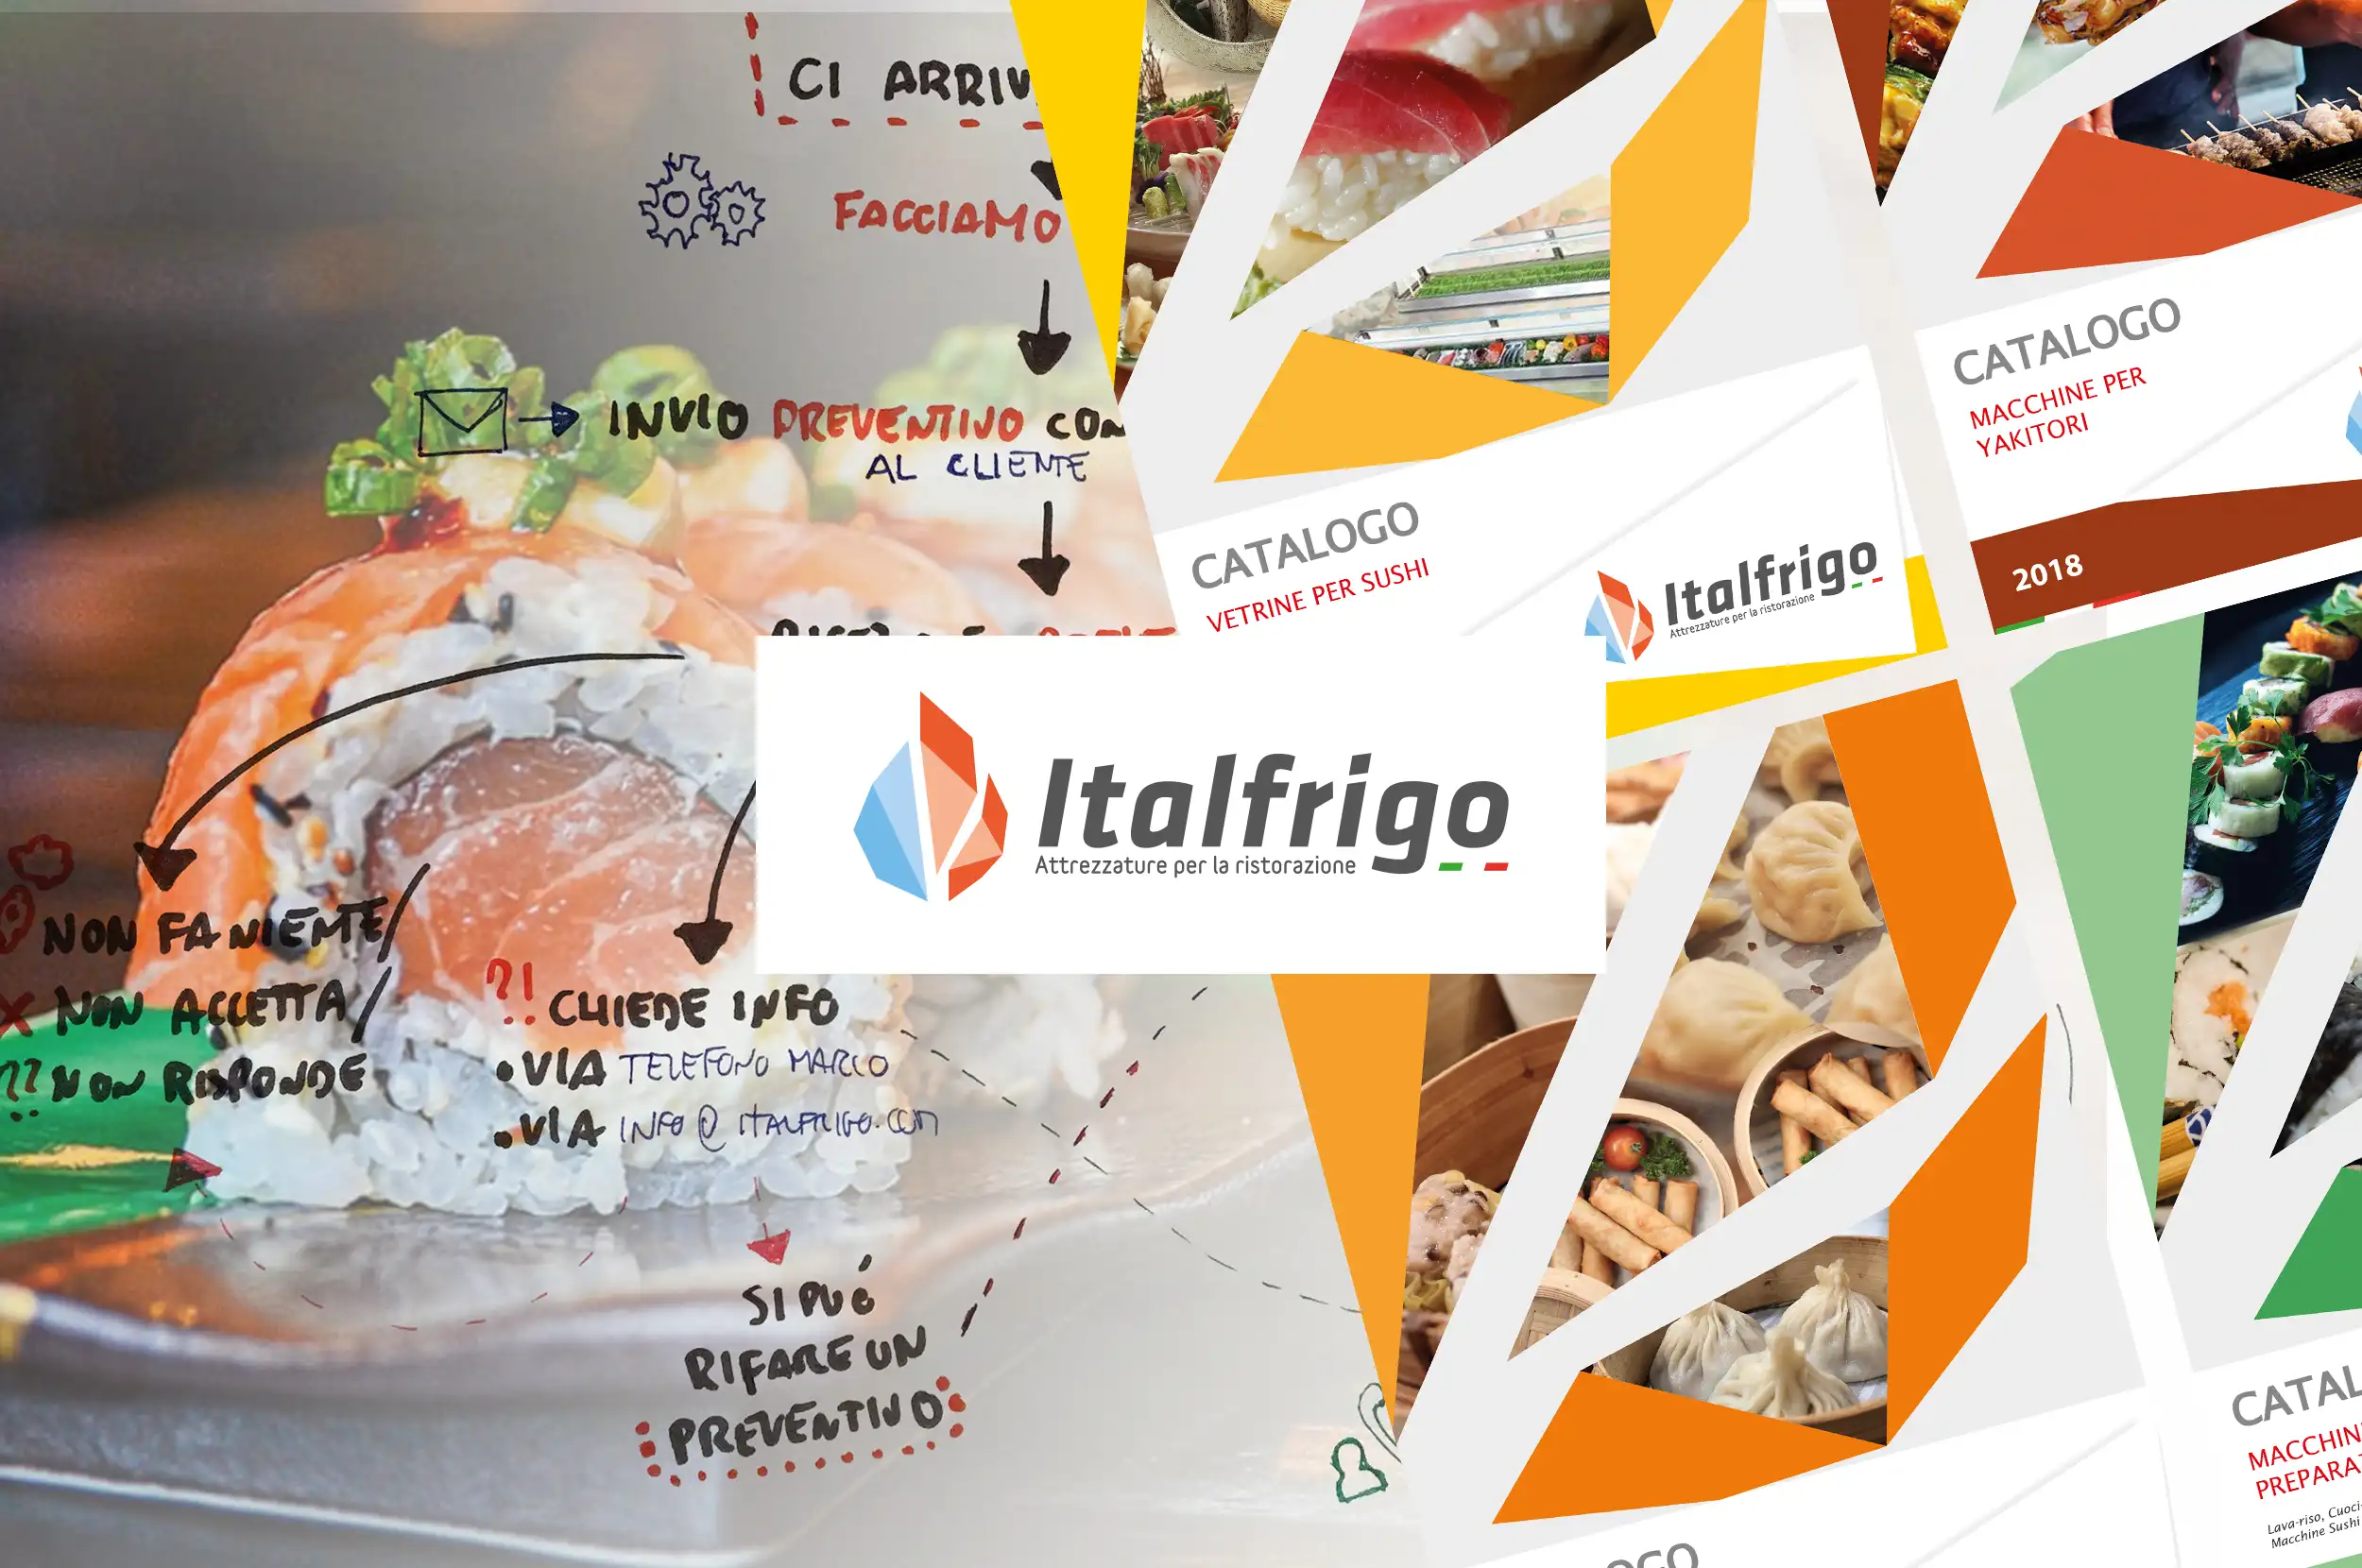 Italfrigo: Re-design business and services